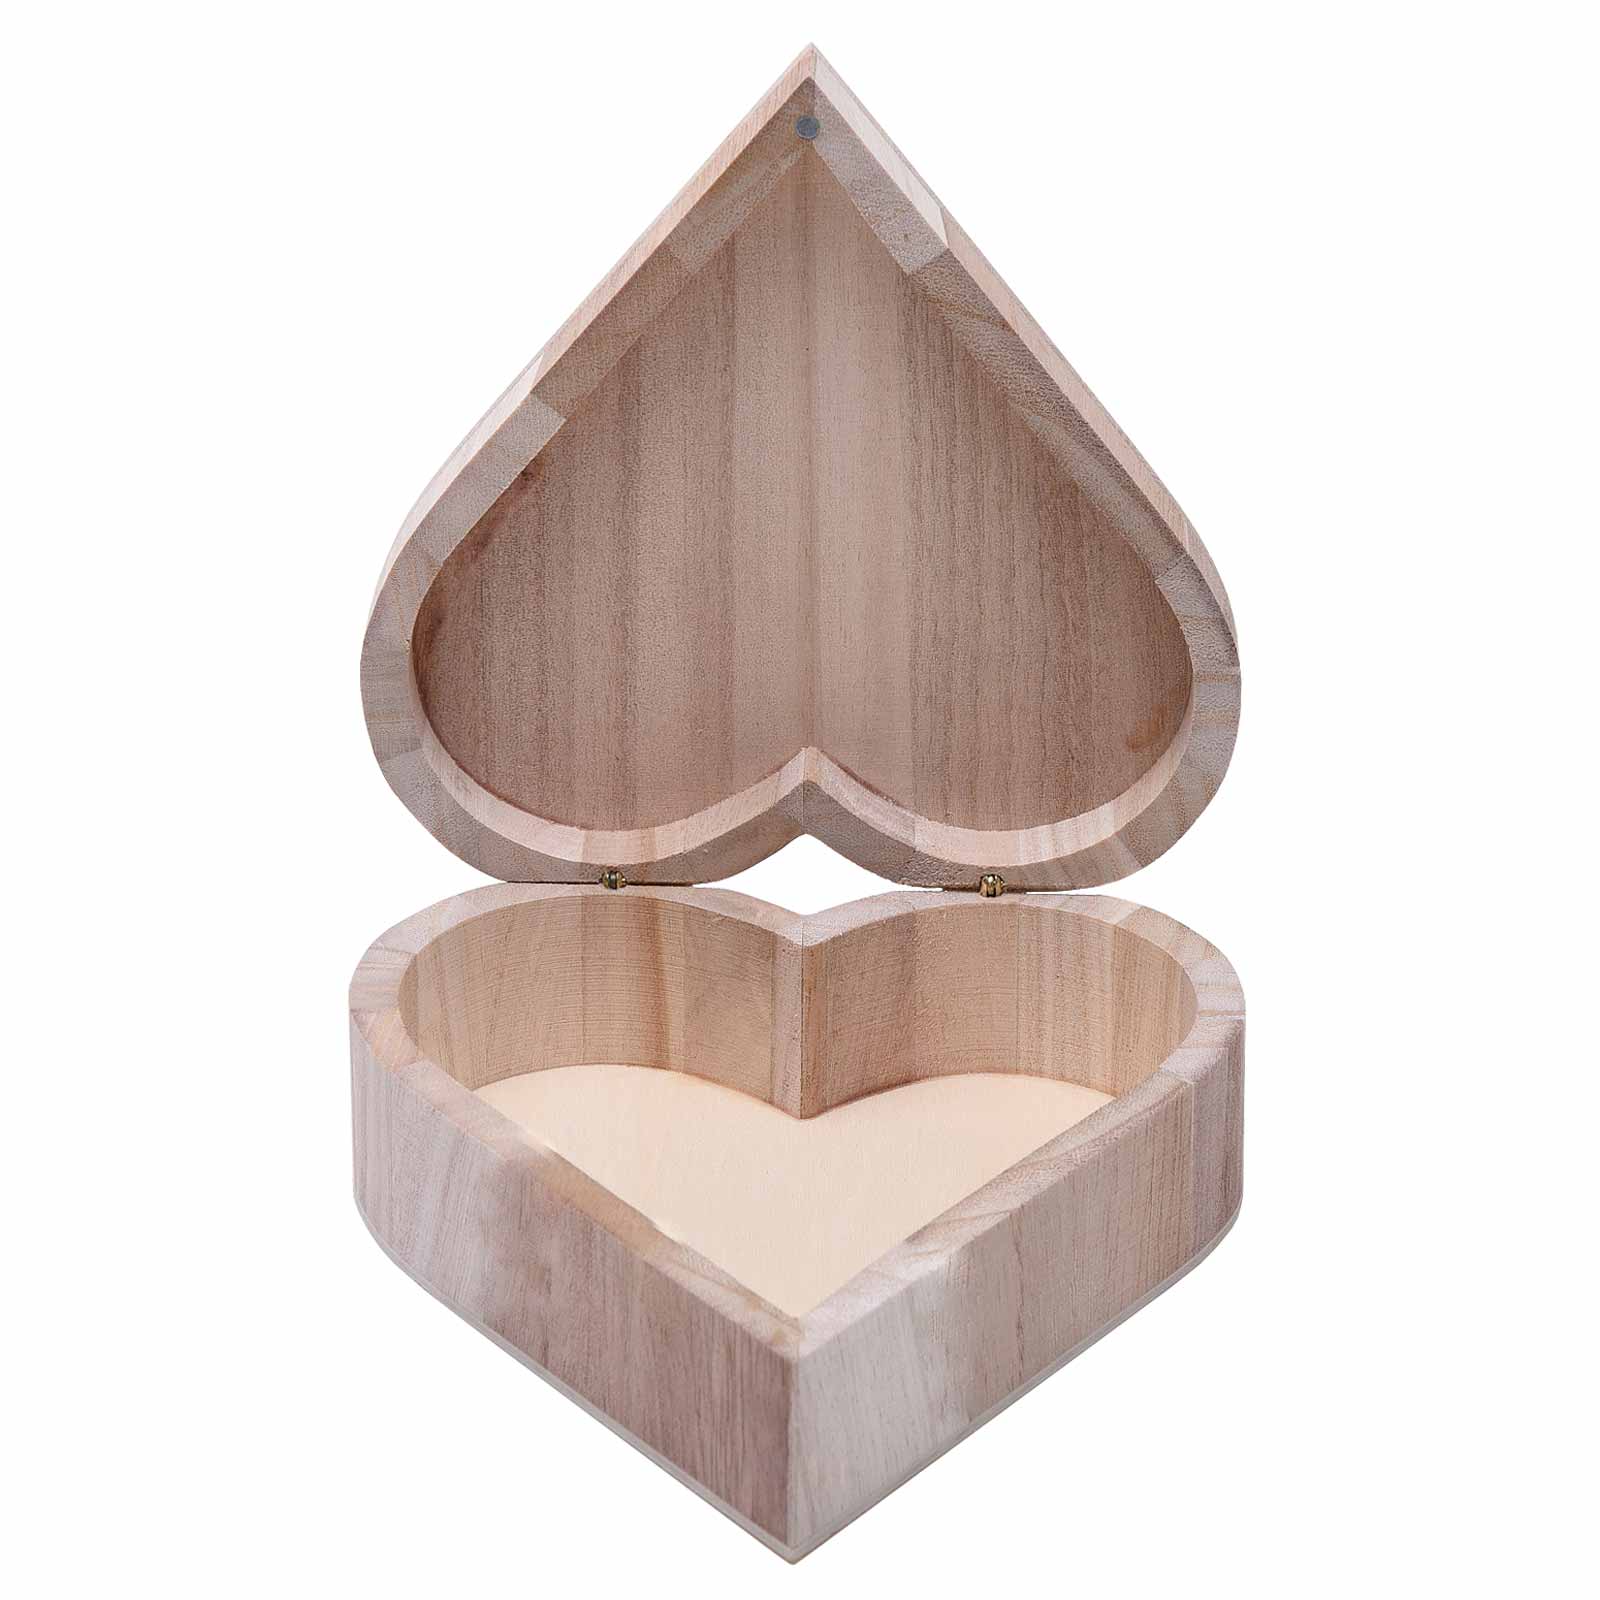 Personalised Large 15.5cm Wooden Hinged Heart Trinket Or Keepsake Box